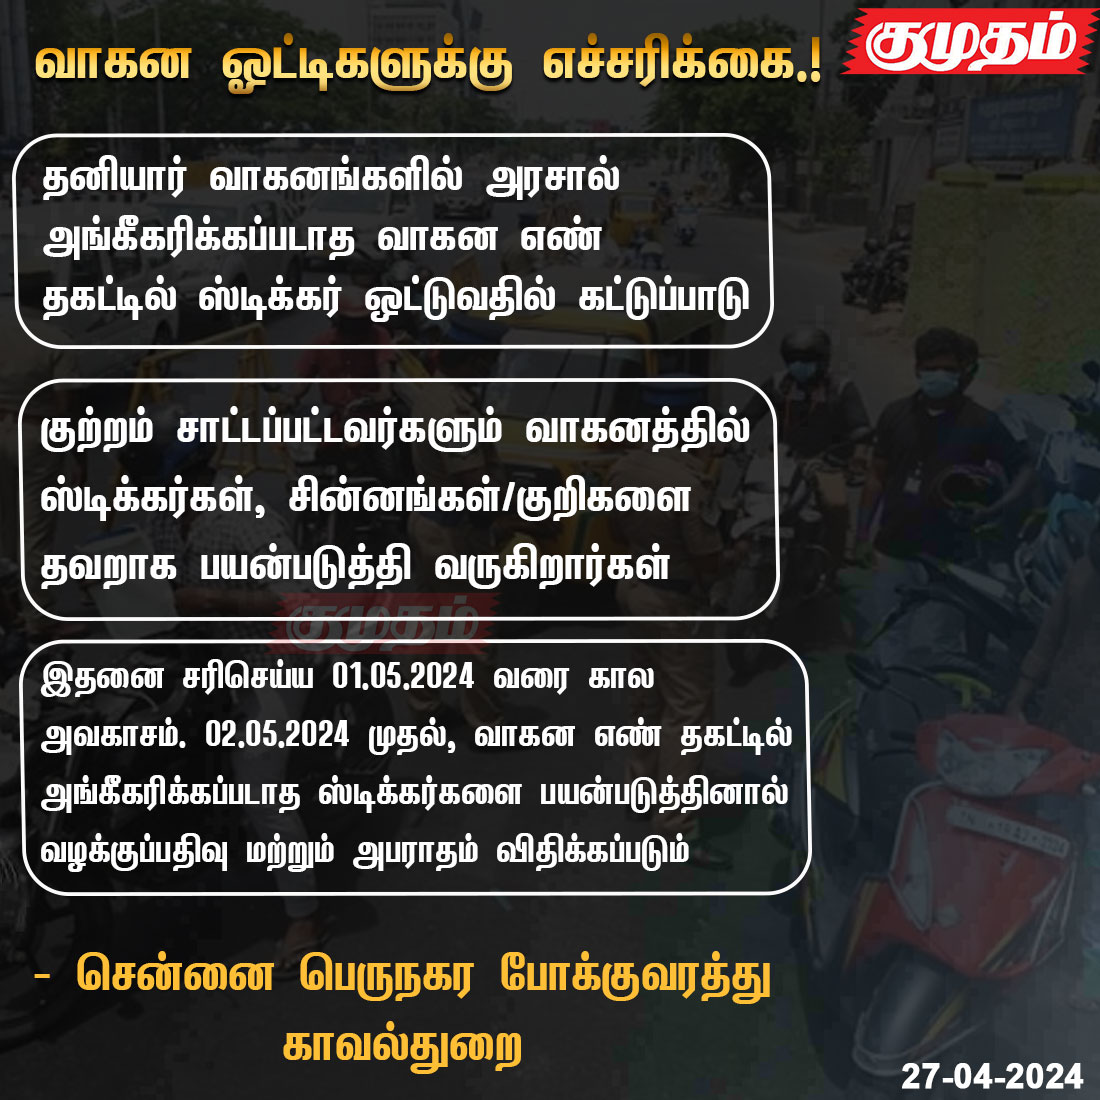 வாகன ஓட்டிகளுக்கு எச்சரிக்கை.!

kumudam.com | #Trafficpolice | #ChennaiTrafficpolice | #Vechiles | #Stickers | #Numberplates | @ChennaiTraffic